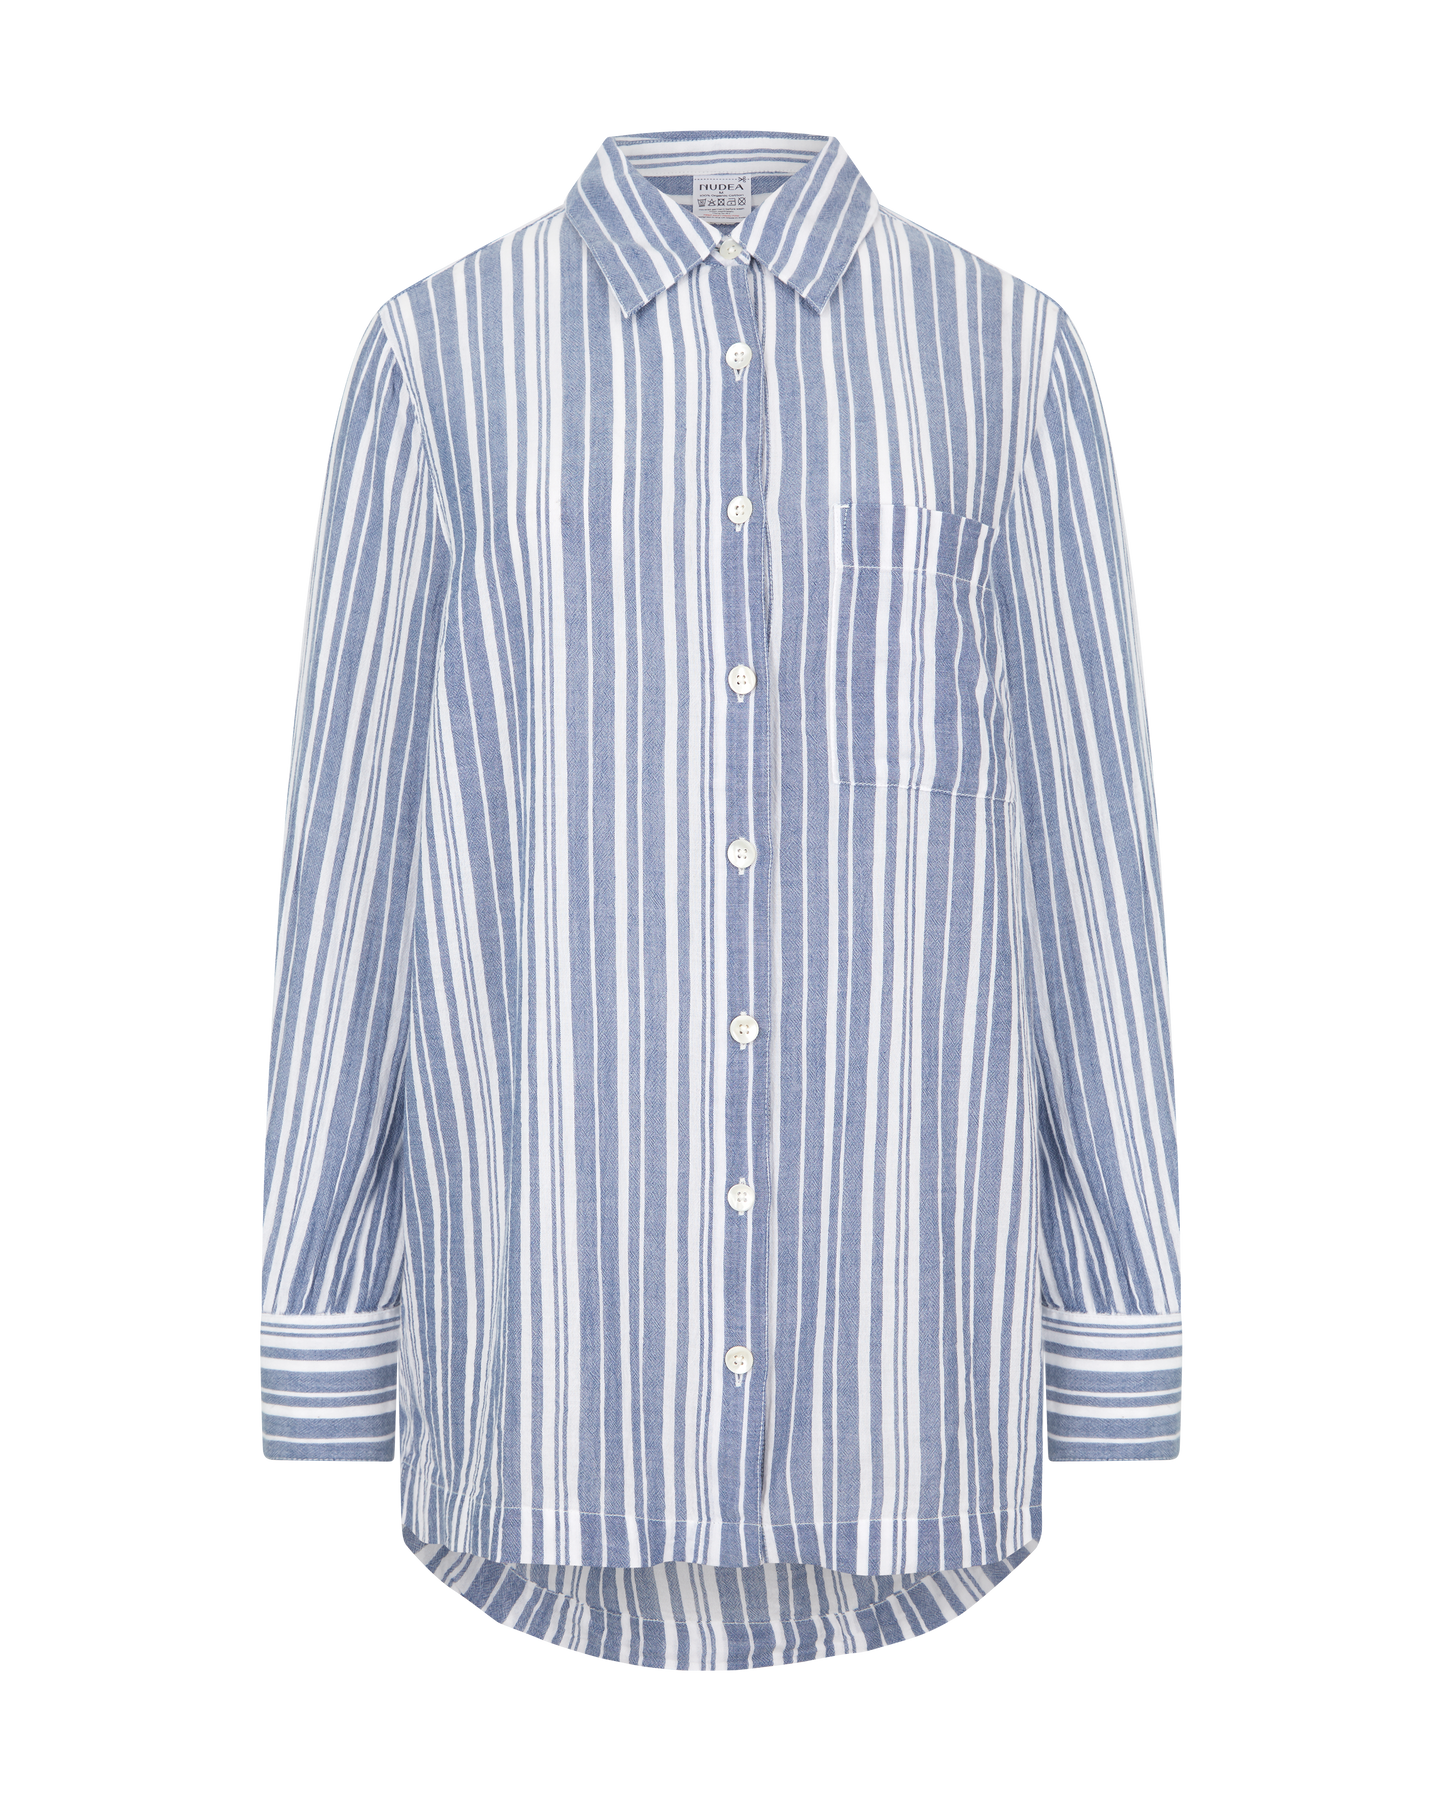 The Midi Shirt - French Navy Stripe